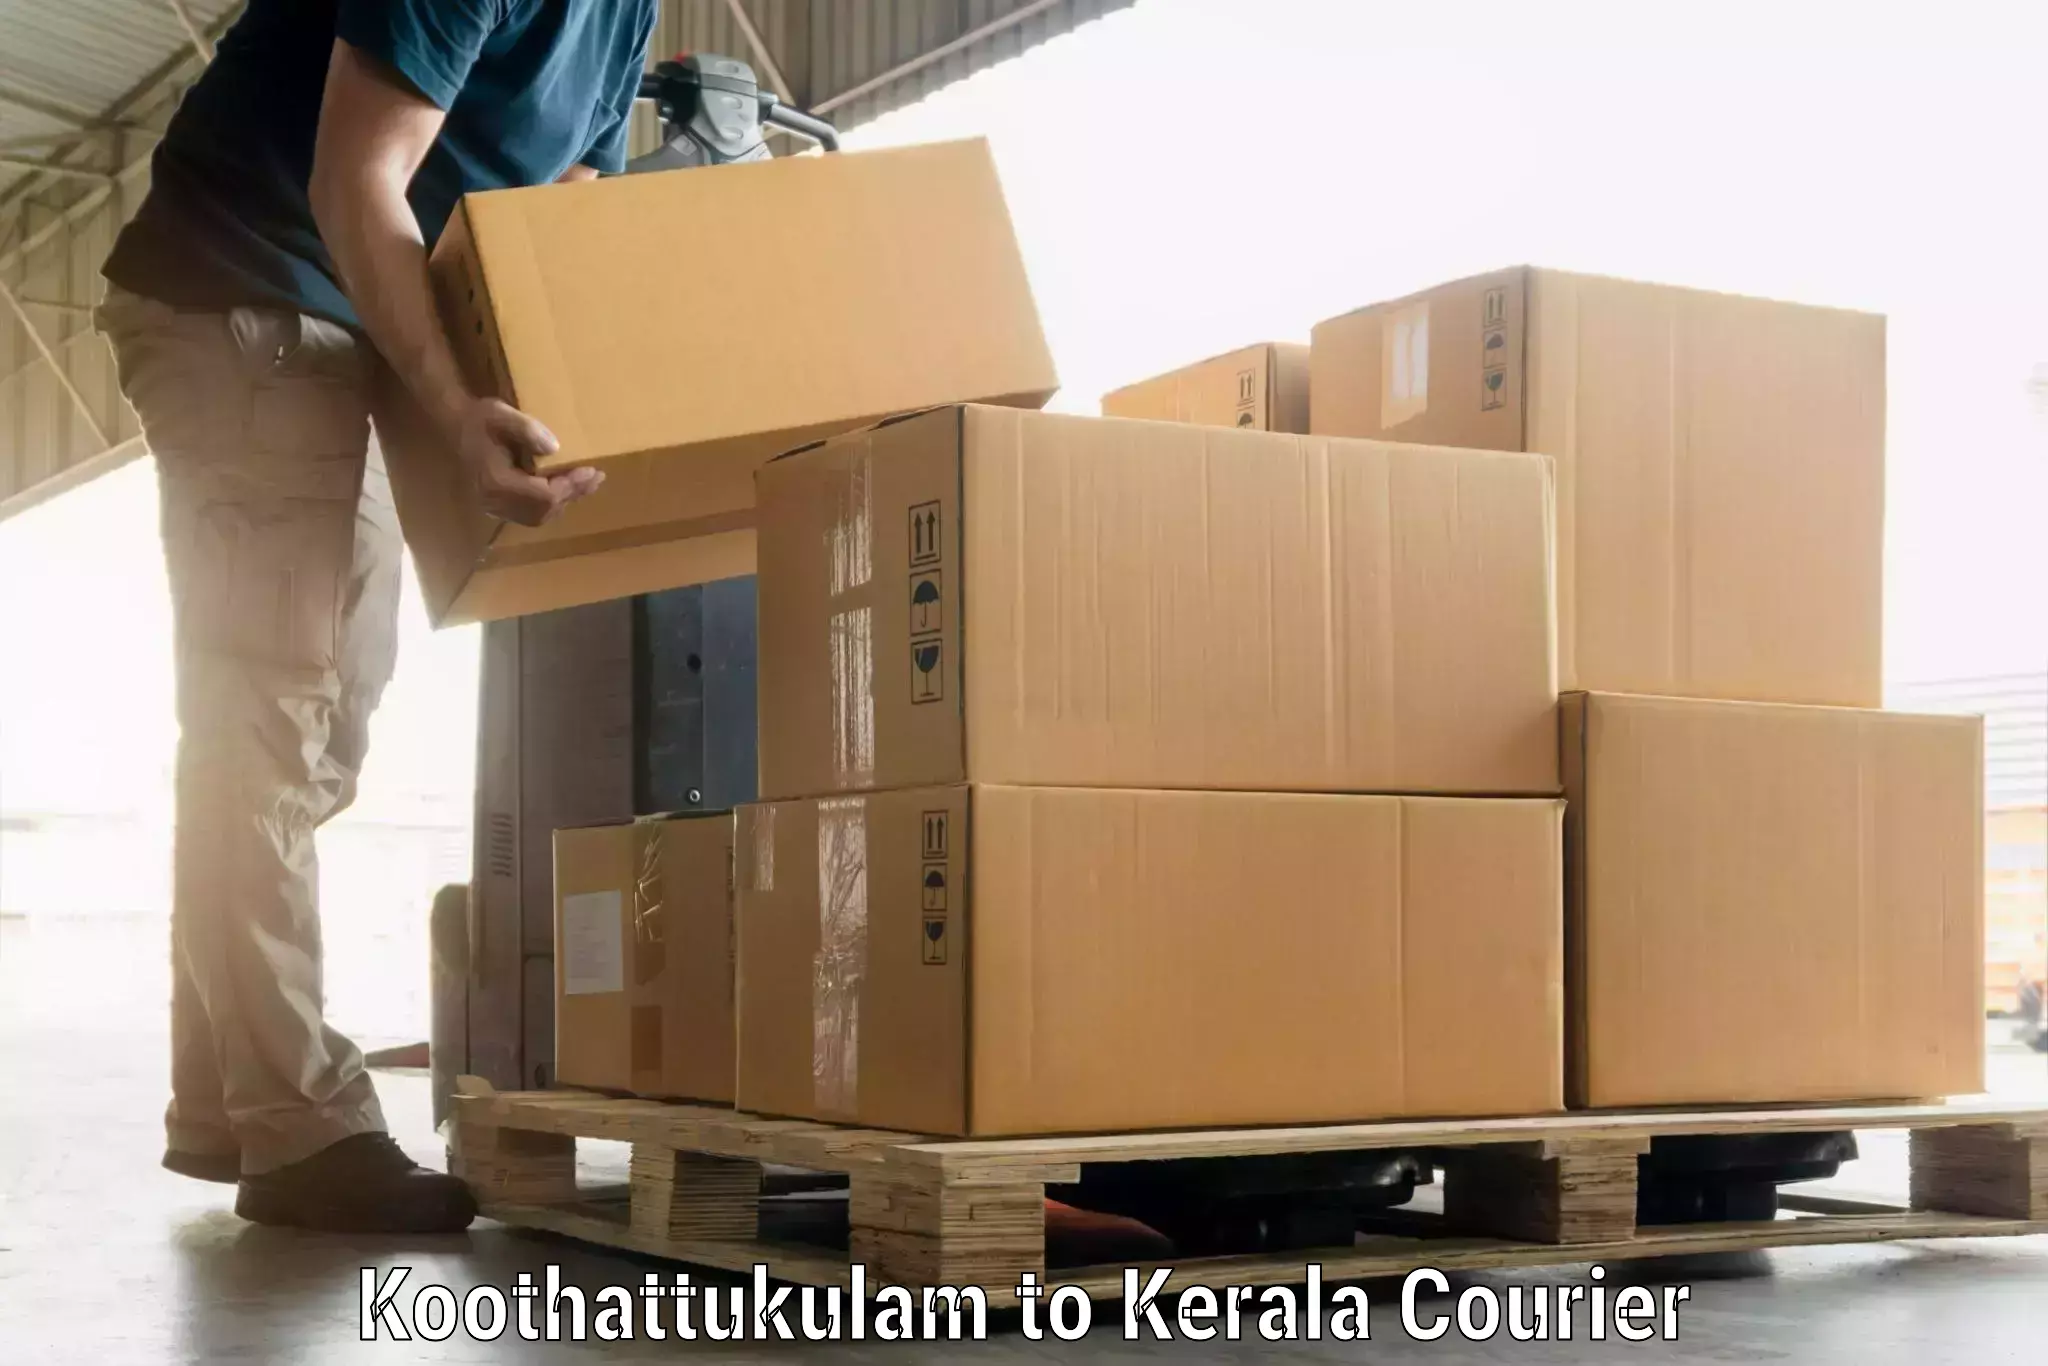 Holiday season luggage delivery Koothattukulam to IIT Palakkad